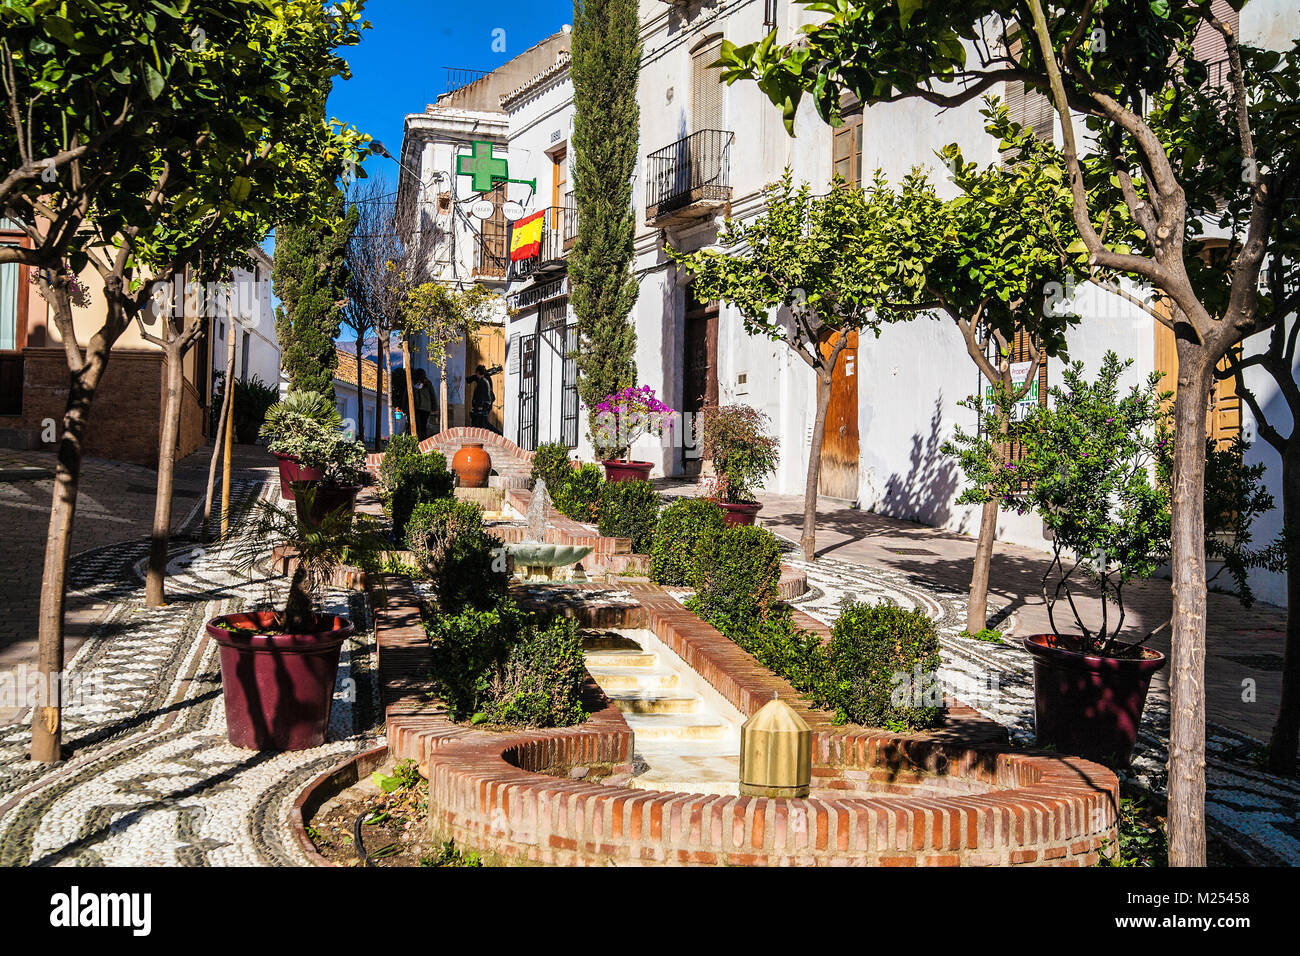 Spanish street scenes Stock Photo